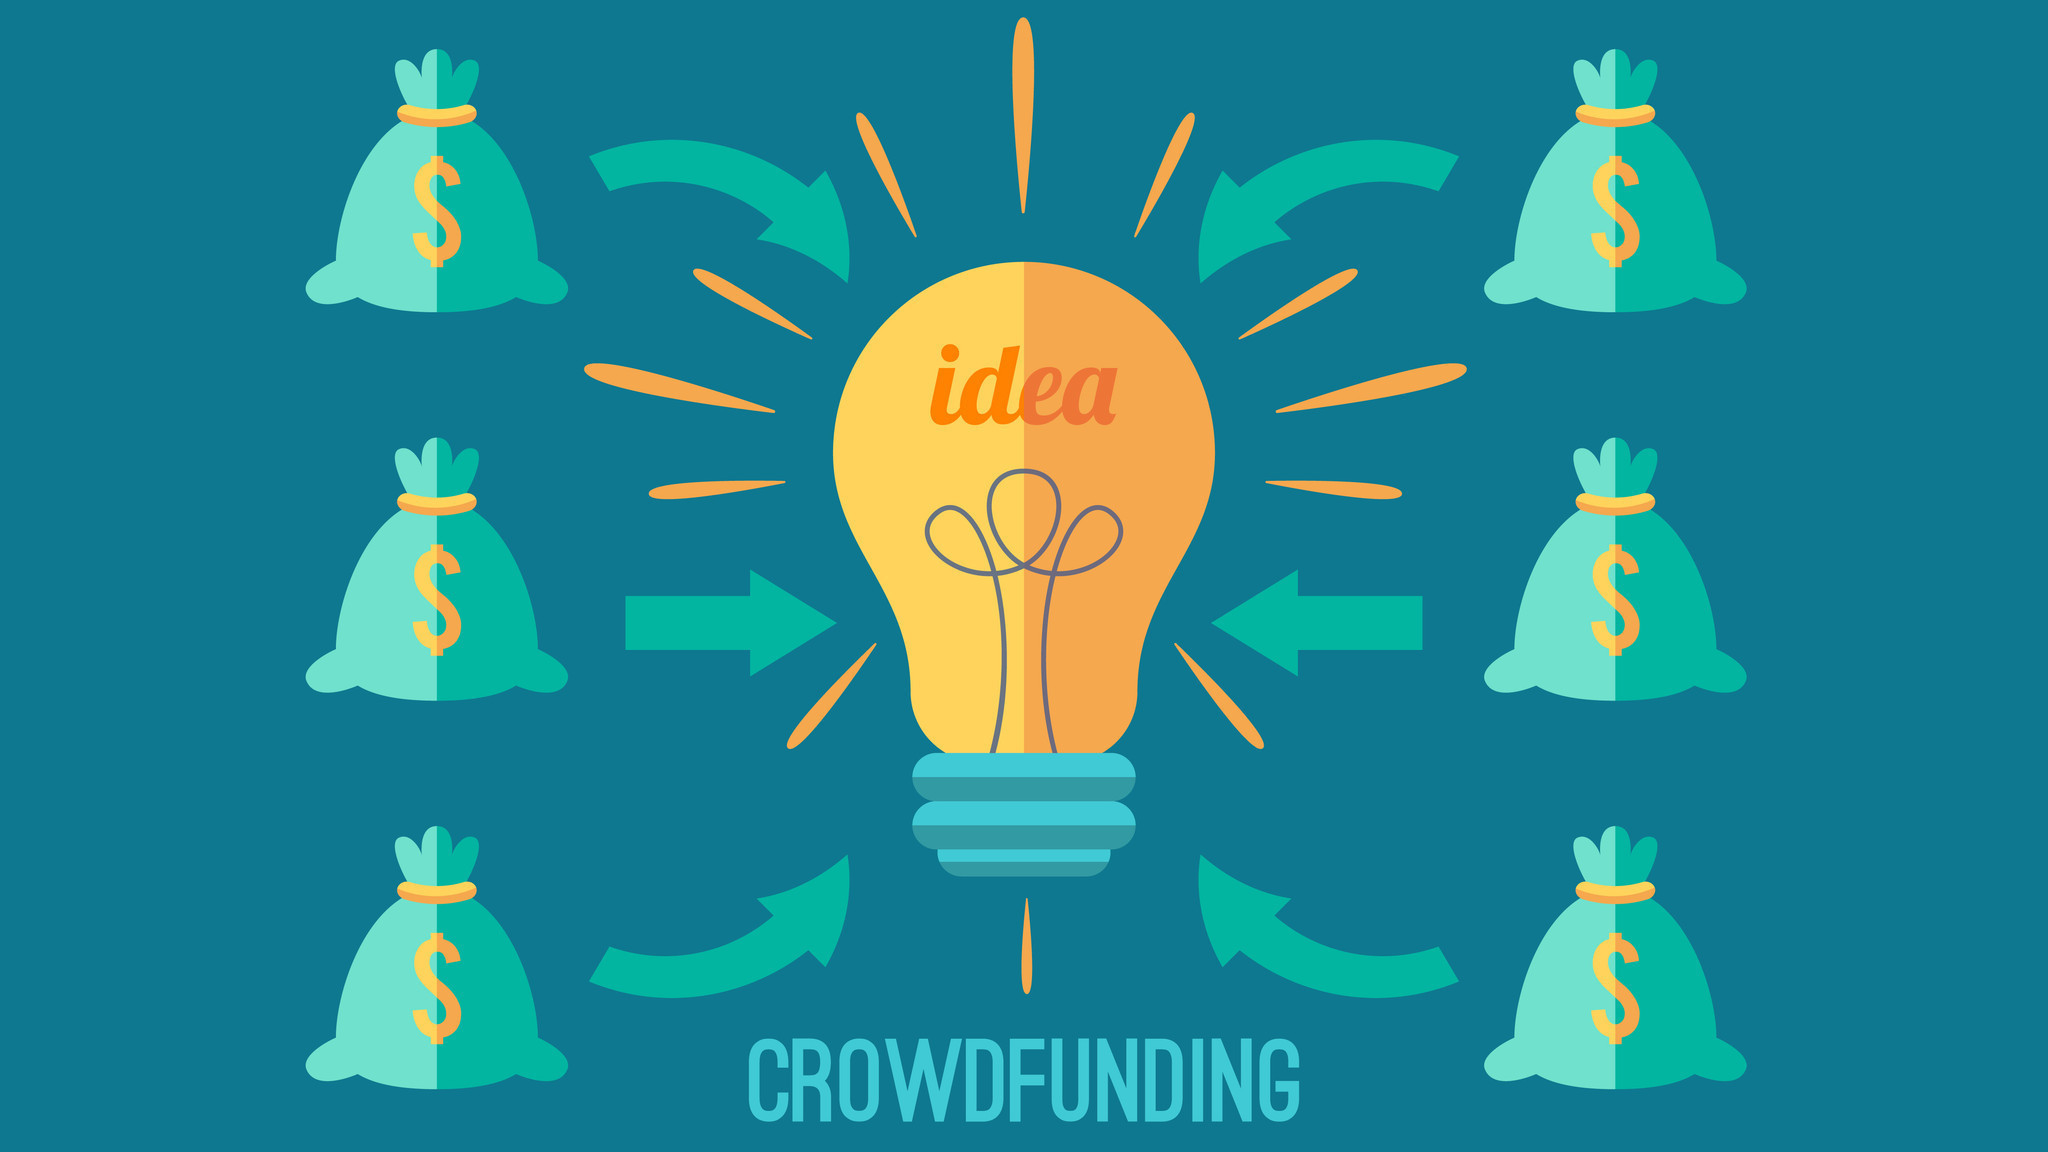 Ilustração alusiva ao Crowdfunding, Tem uma lâmpada de ideias no meio com vários sacos de dinheiro a volta com setas para a lâmpada